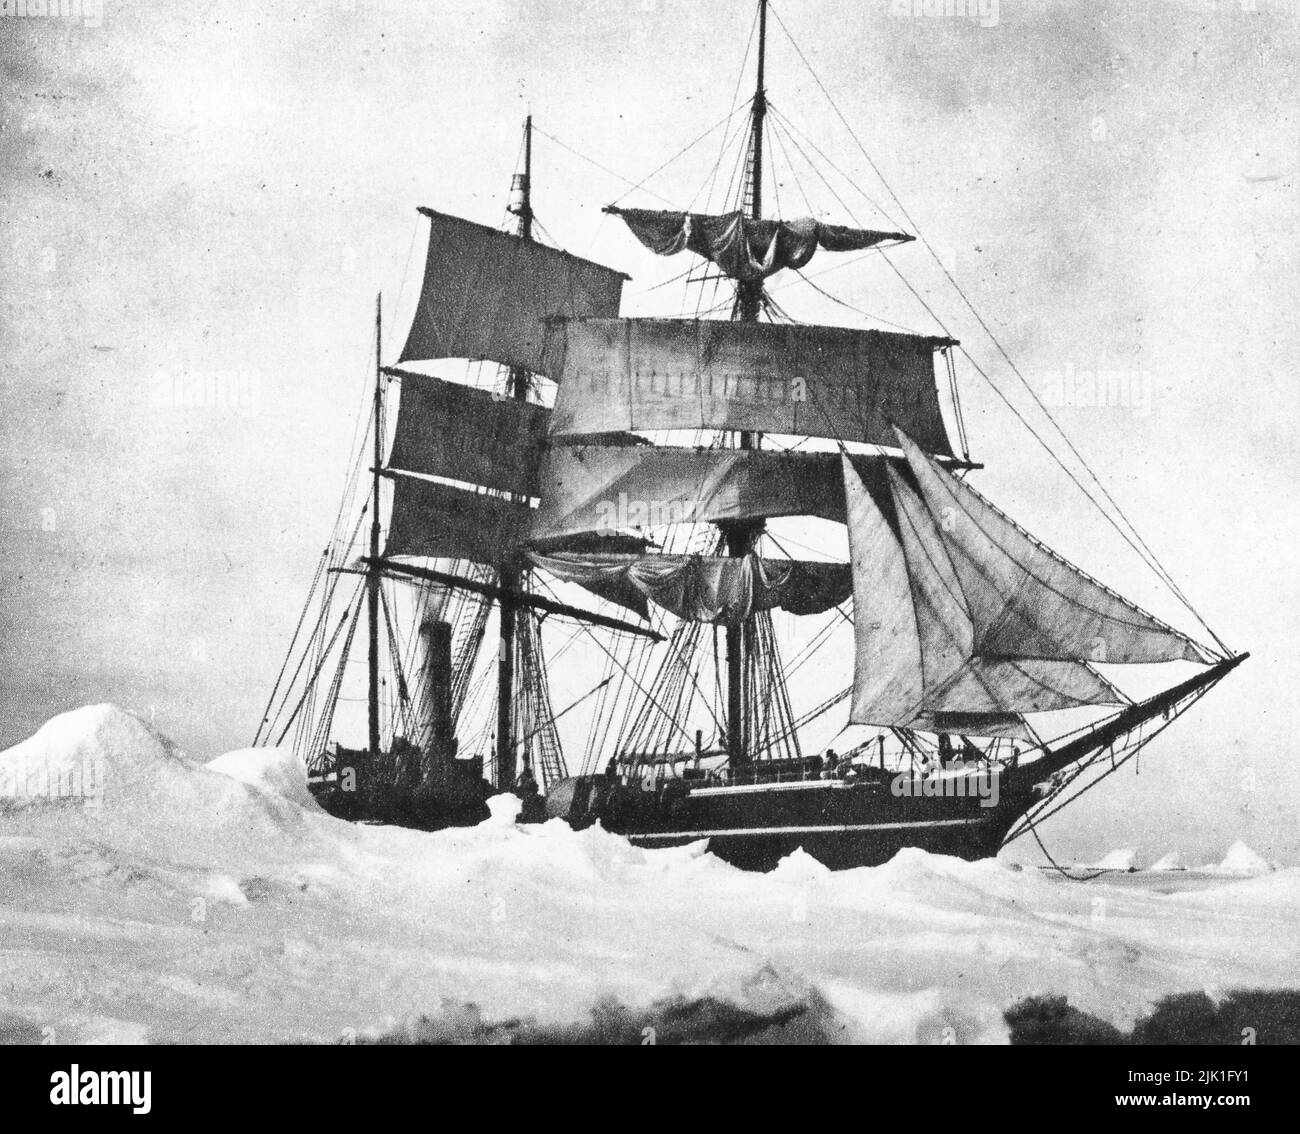 Terra Nova, captive dans Heavy Pack, 1910. Par Herbert Ponting (1870-1935). L'expédition Terra Nova (British Antarctic Expedition) était une expédition en Antarctique qui s'est déroulée entre 1910 et 1913. Dirigé par le capitaine Robert Falcon Scott (1868-1912), qui voulait être le premier à atteindre le pôle Sud géographique. Lui et quatre autres ont atteint le pôle le 17th janvier 1912, où ils ont constaté qu'une équipe norvégienne dirigée par Roald Amundsen (1872-1928) les avait précédés. Le groupe de cinq de Scott est mort sur le voyage de retour du pôle. Banque D'Images